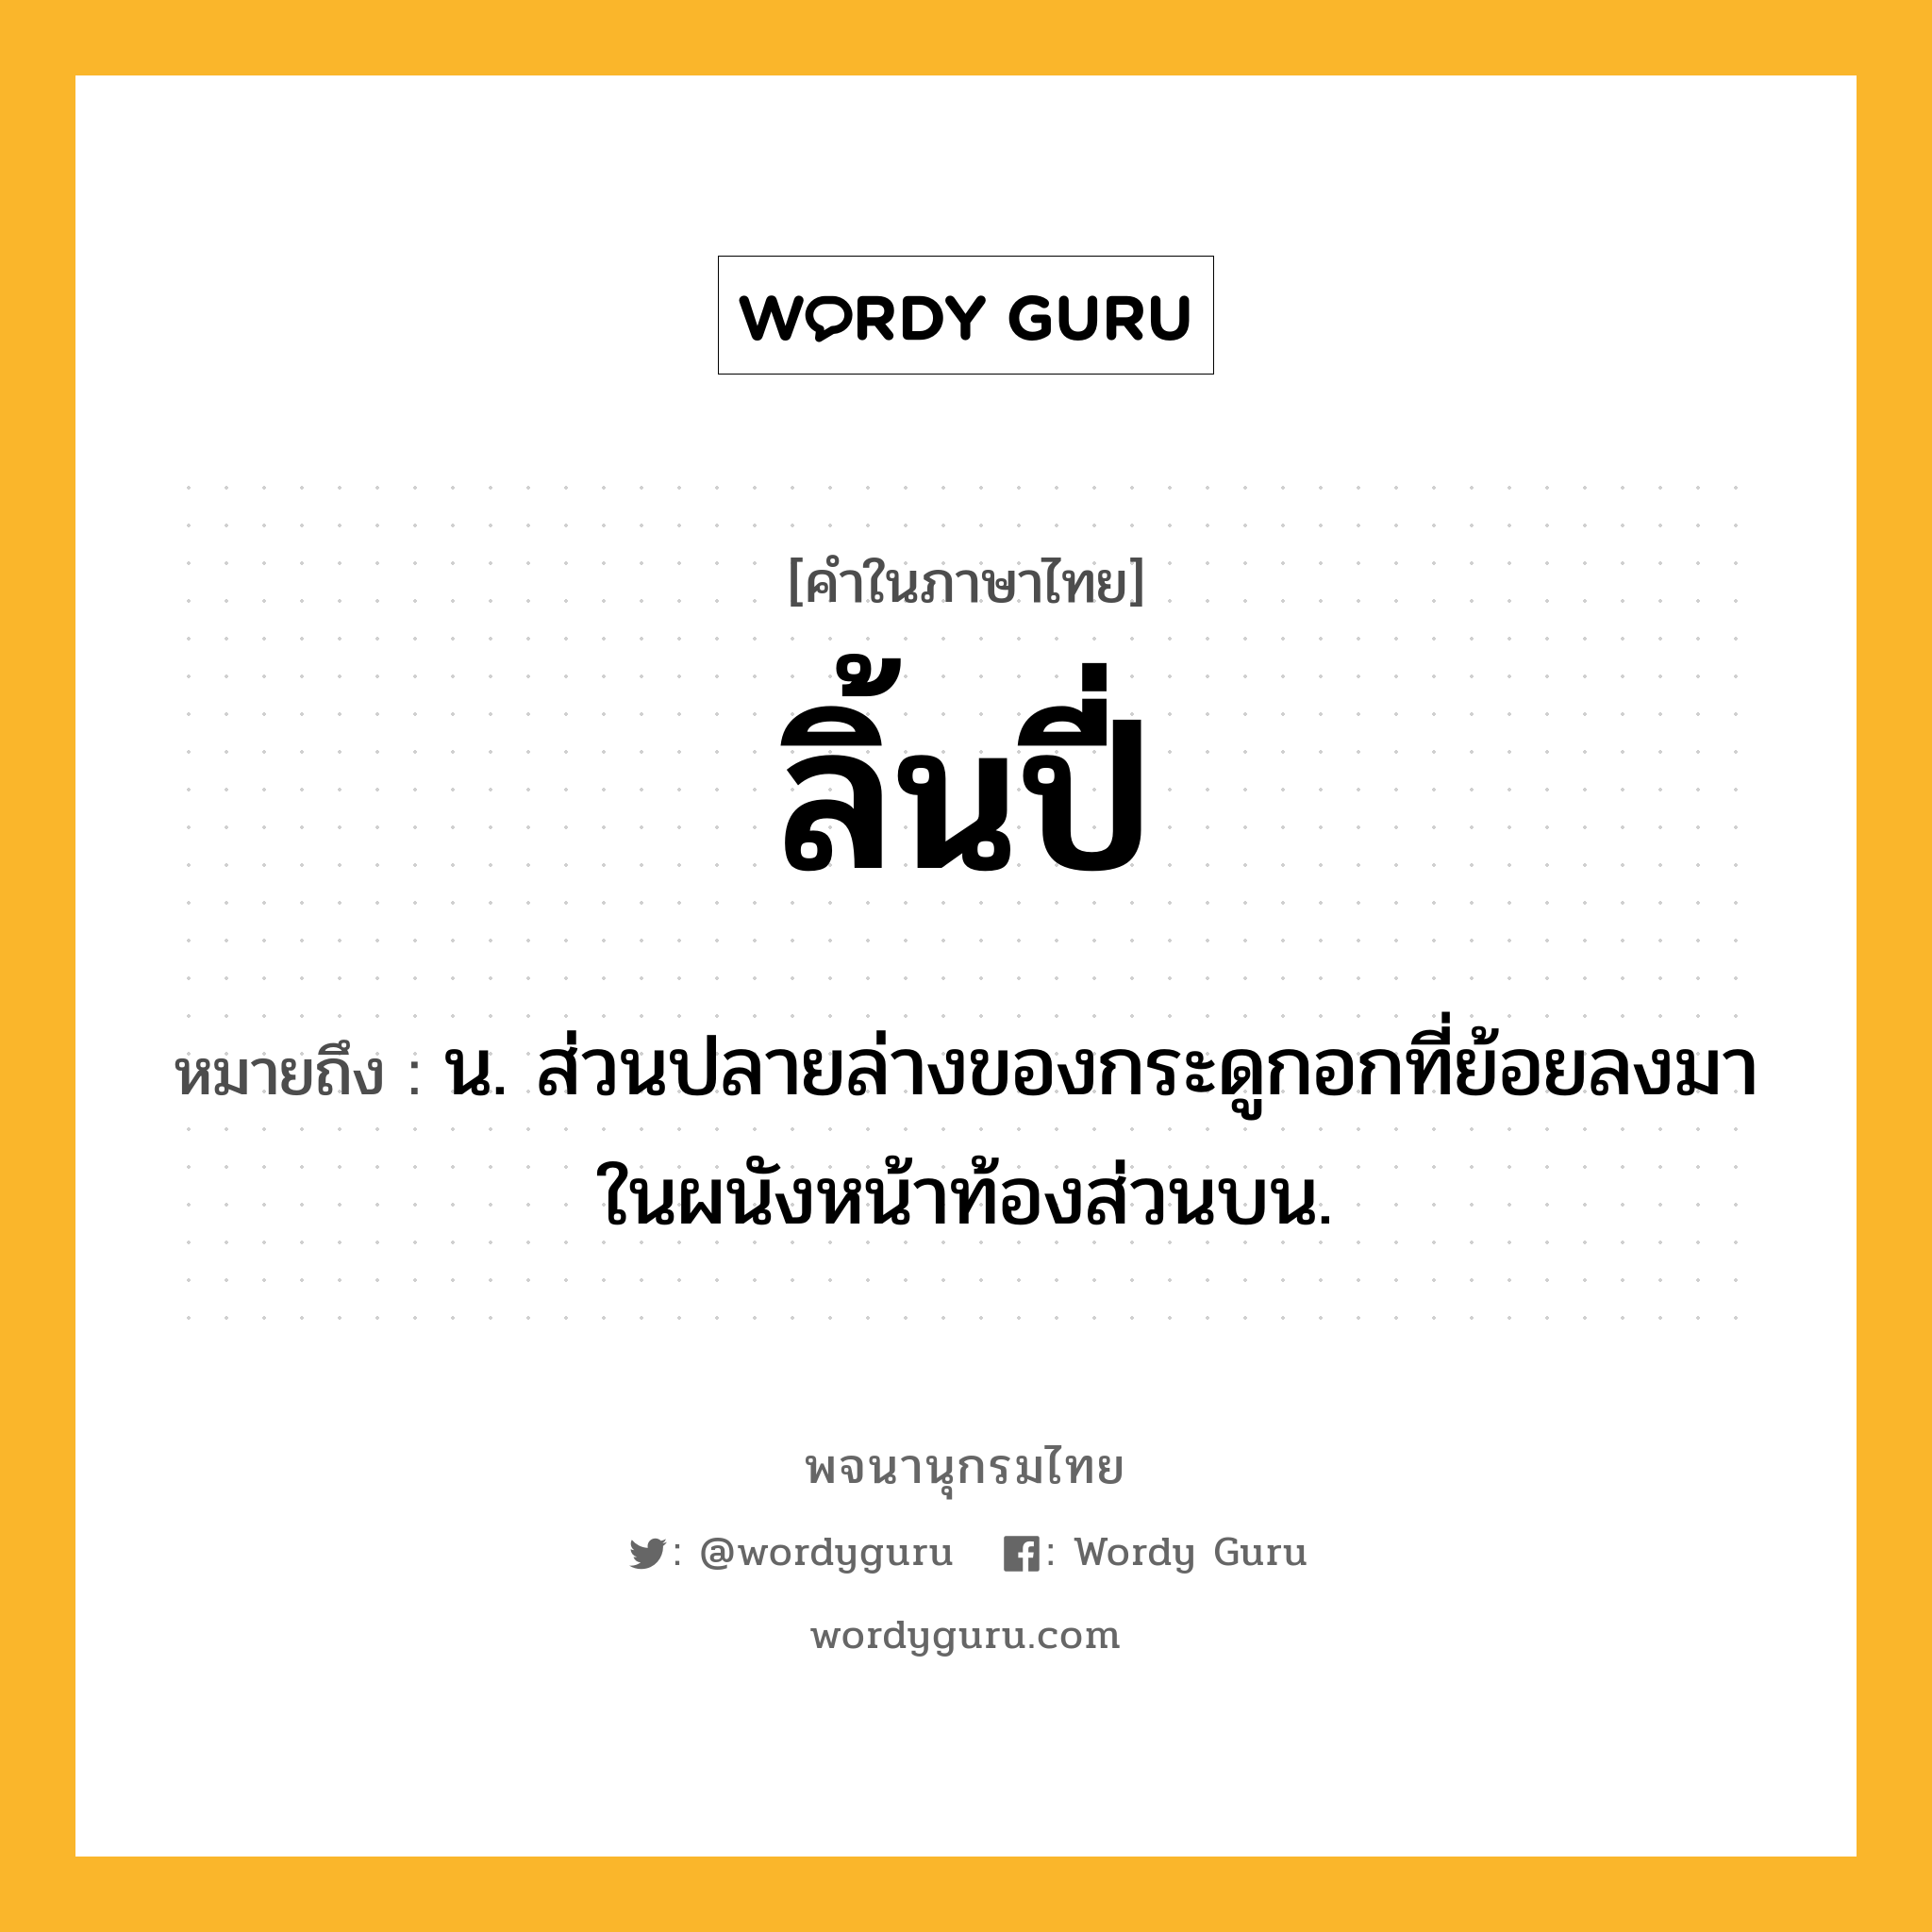 ลิ้นปี่ ความหมาย หมายถึงอะไร?, คำในภาษาไทย ลิ้นปี่ หมายถึง น. ส่วนปลายล่างของกระดูกอกที่ย้อยลงมาในผนังหน้าท้องส่วนบน.